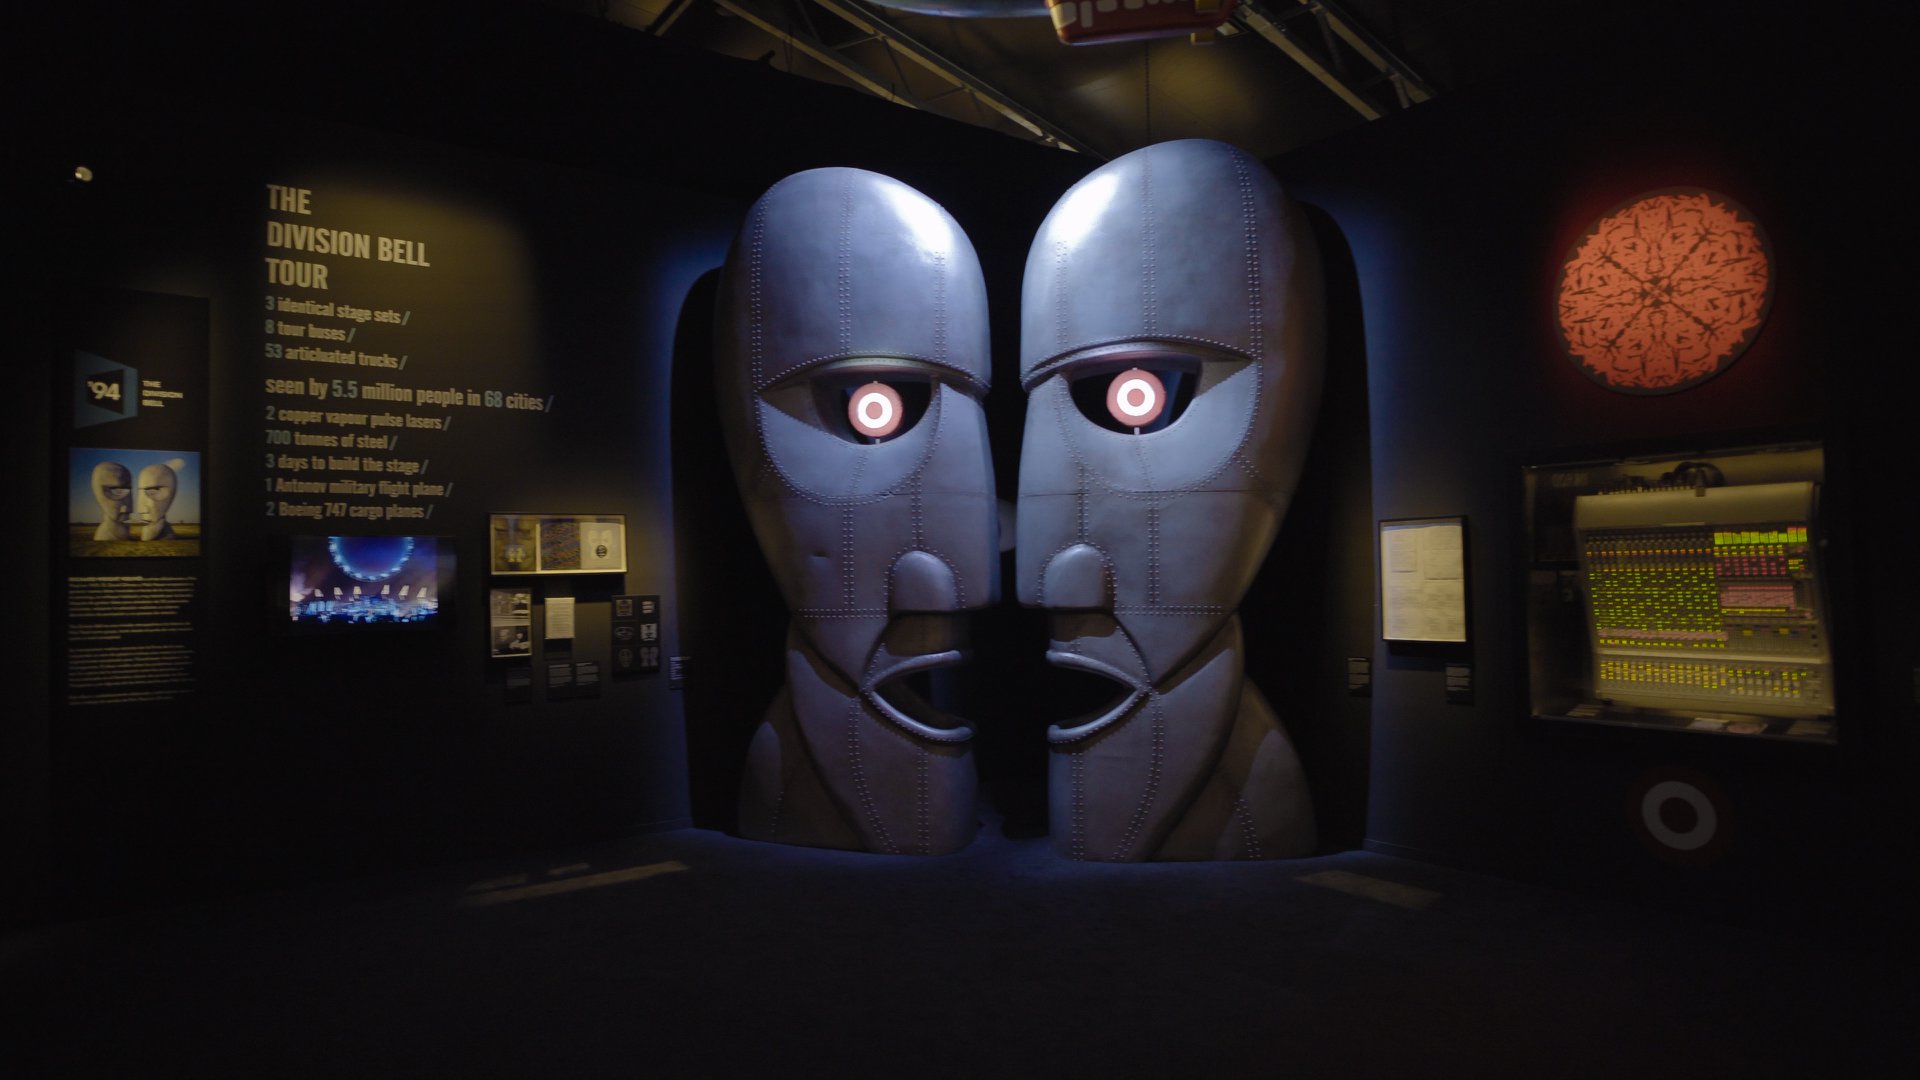 Interaktive modulare Wände von Mila-wall ergänzen die Schau über die Band Pink Floyd